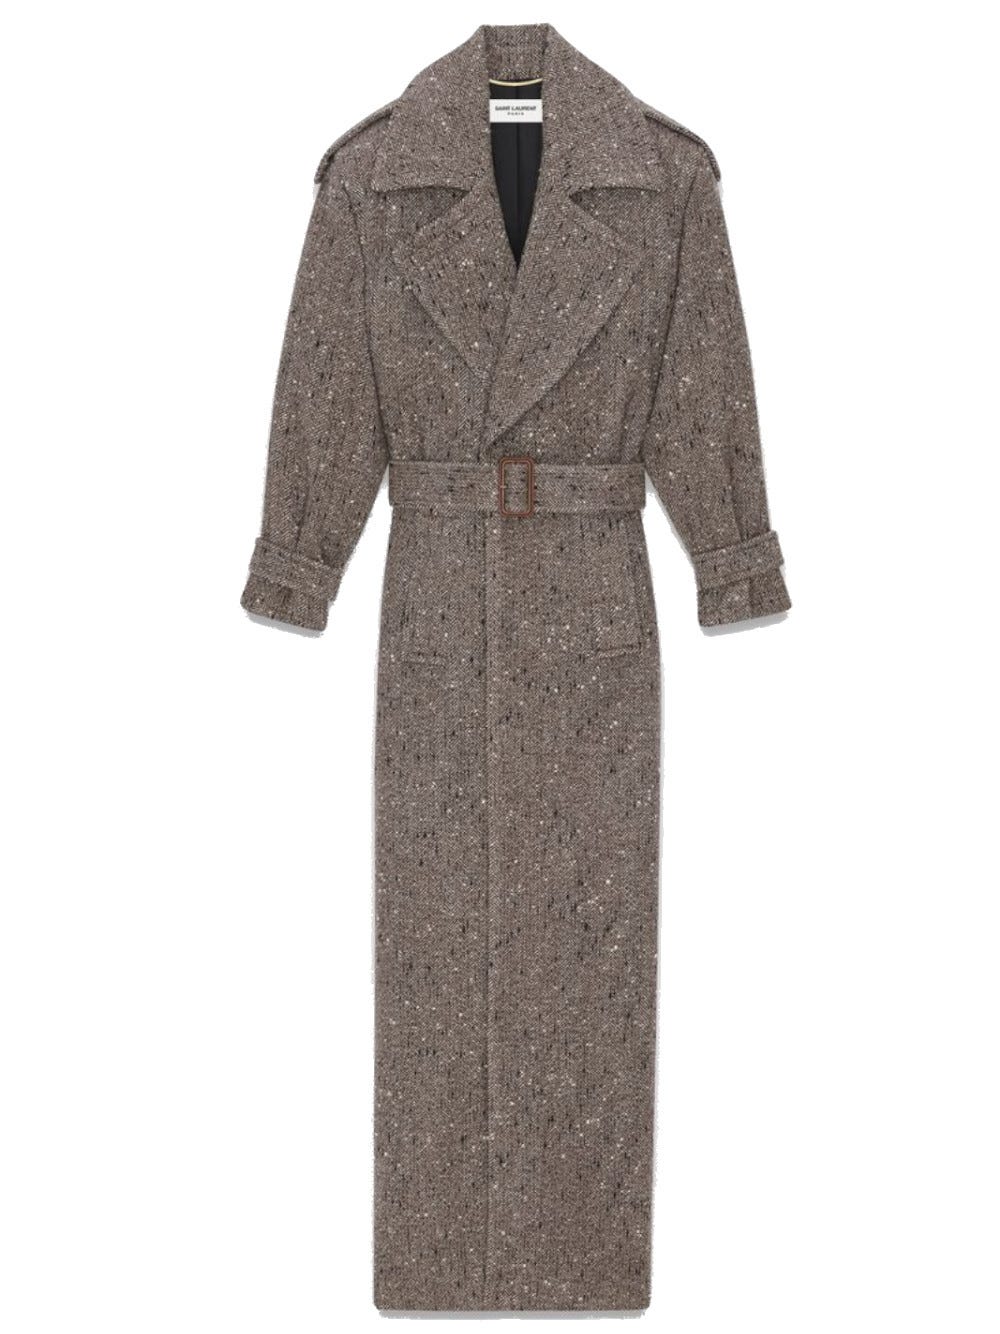 Saint Laurent Belted Herringbone Wool-blend Coat In Brown | ModeSens